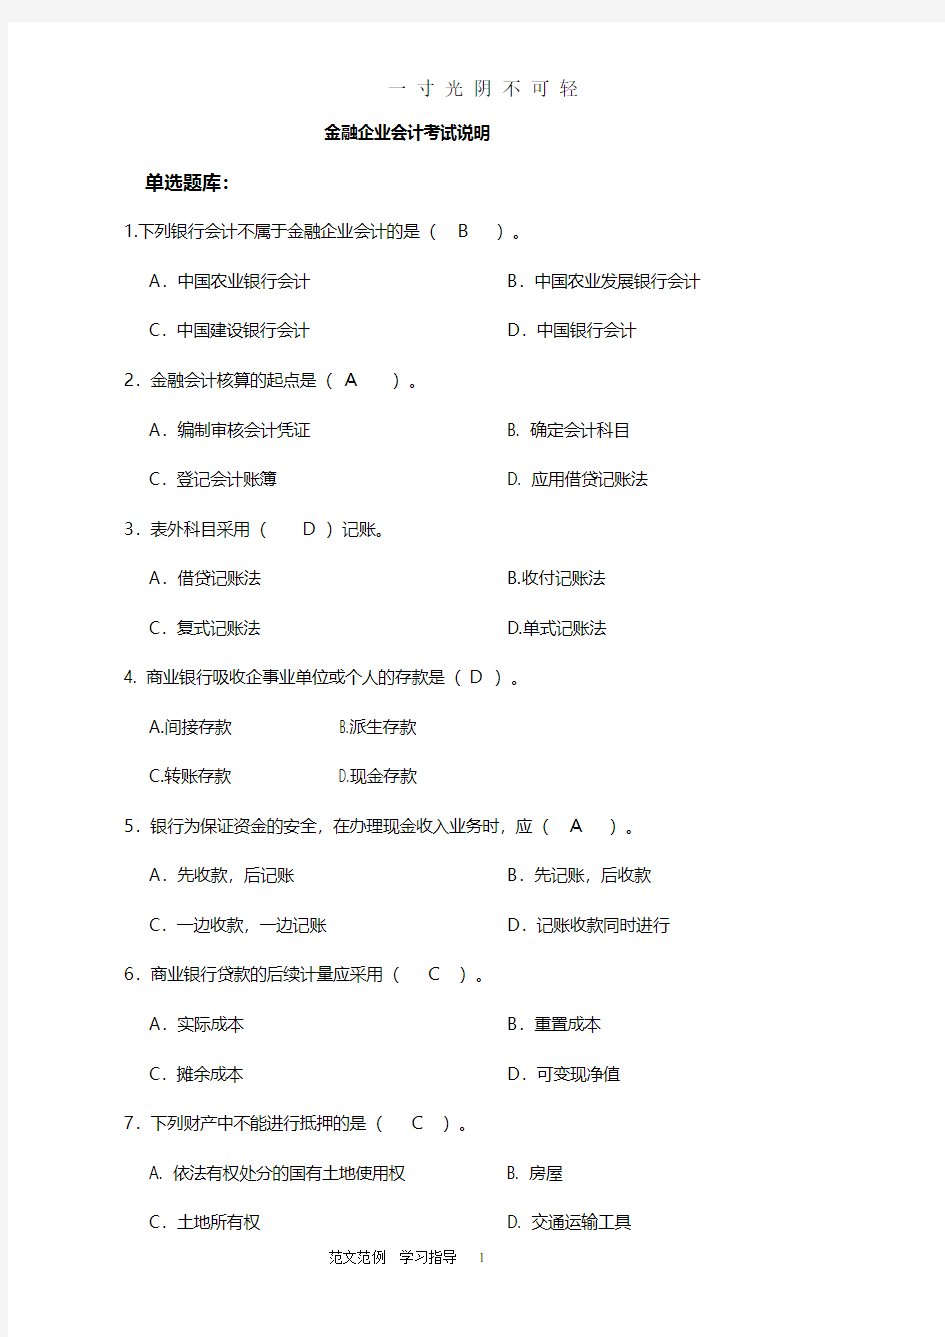 金融企业会计考试试题库完整.pdf